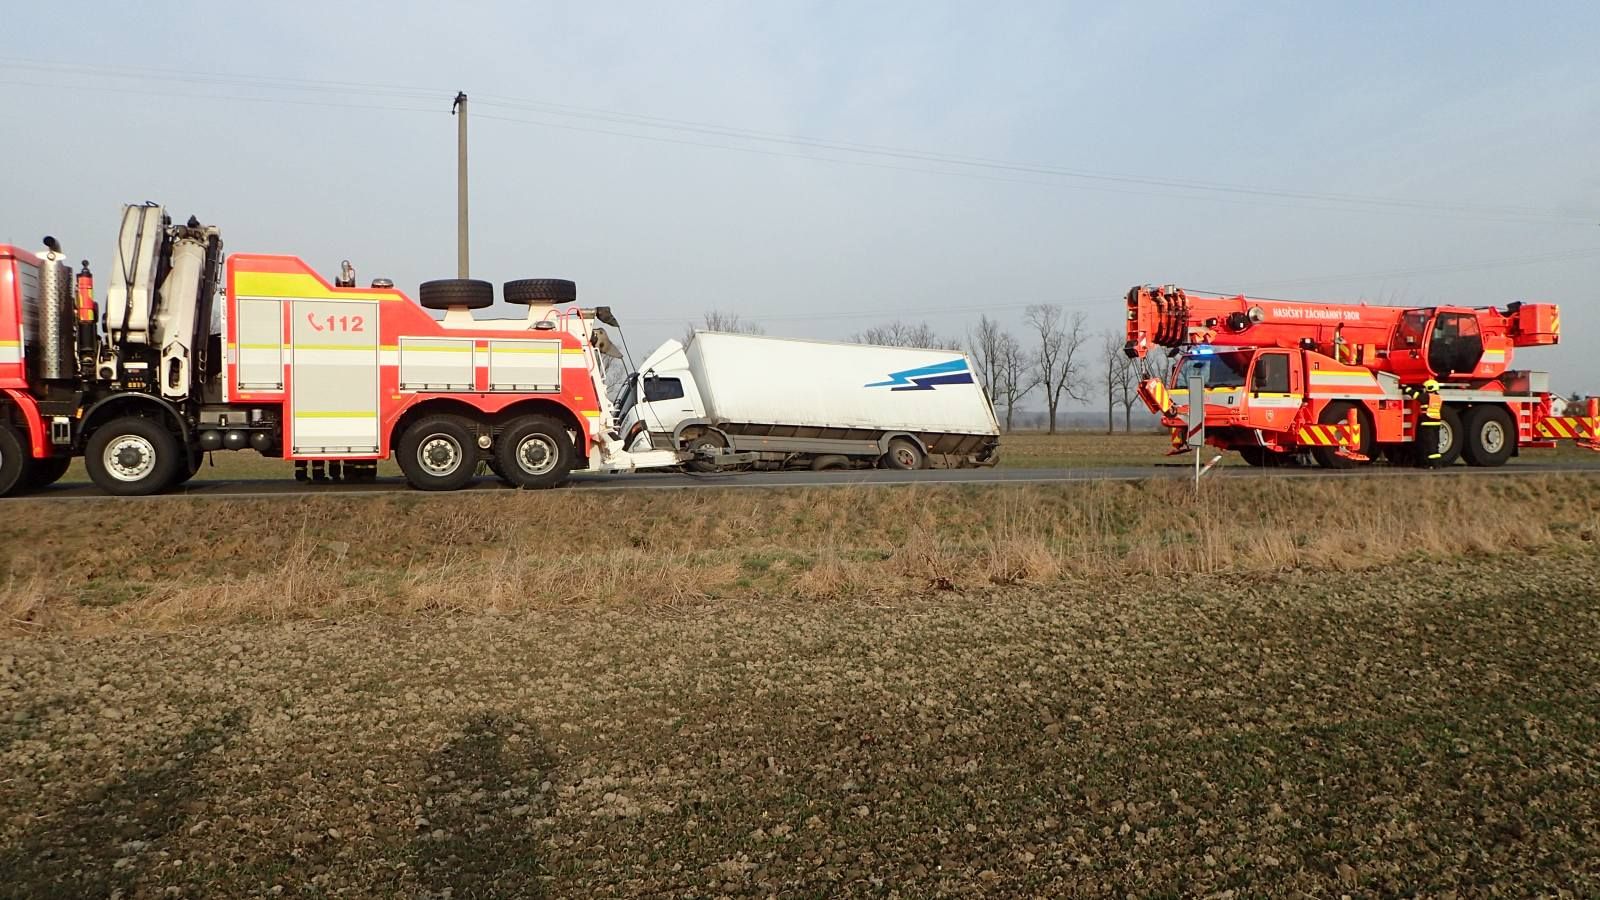 MSK_těžká hasičská technika pomáhala v Bruzovicích a Dolním Benešově s vyproštěním nákladních automobilů.jpg